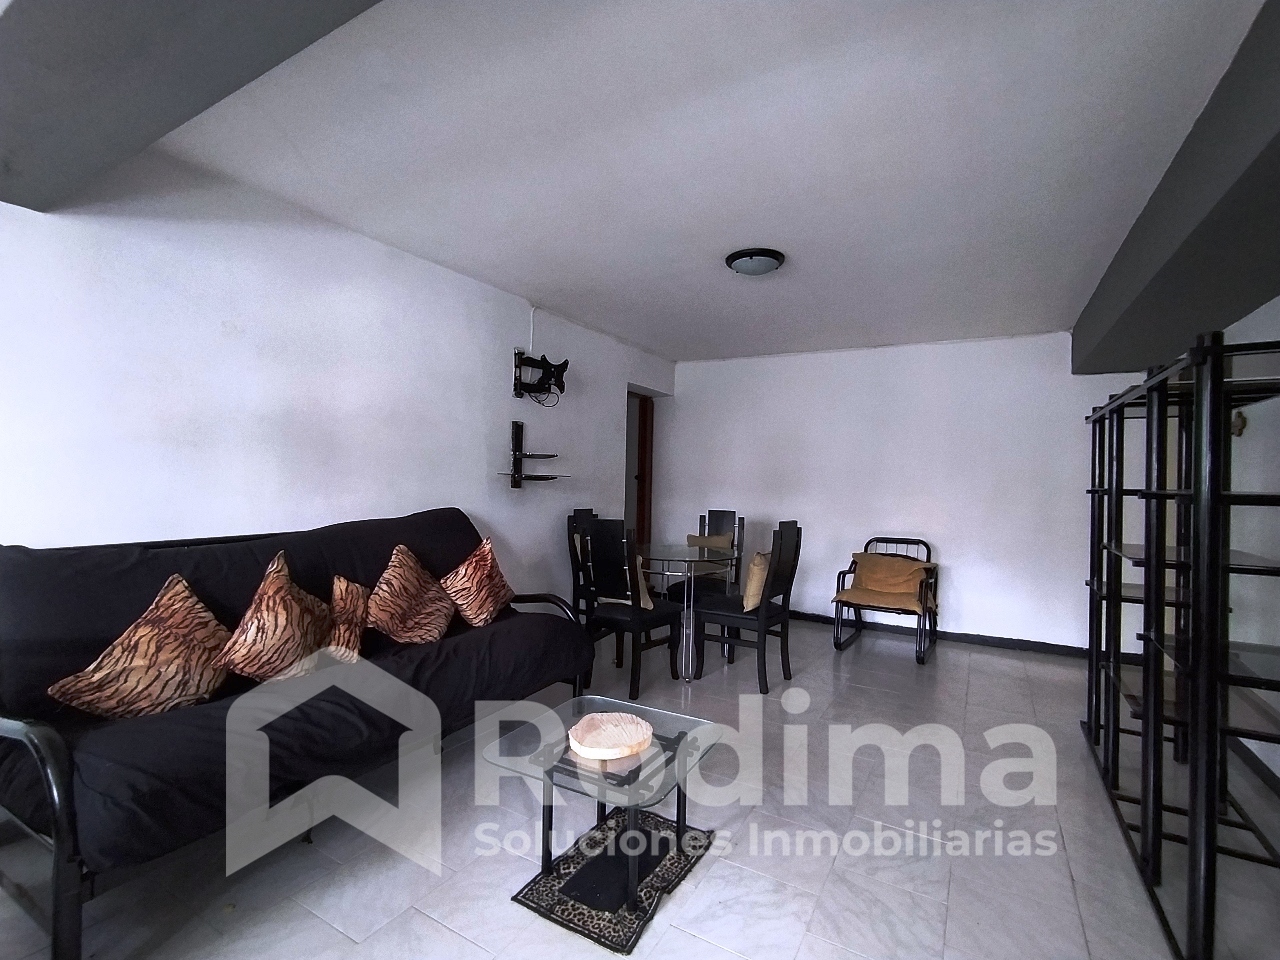 Apartamento en Alquiler en Base Aragua, Maracay, Amoblado